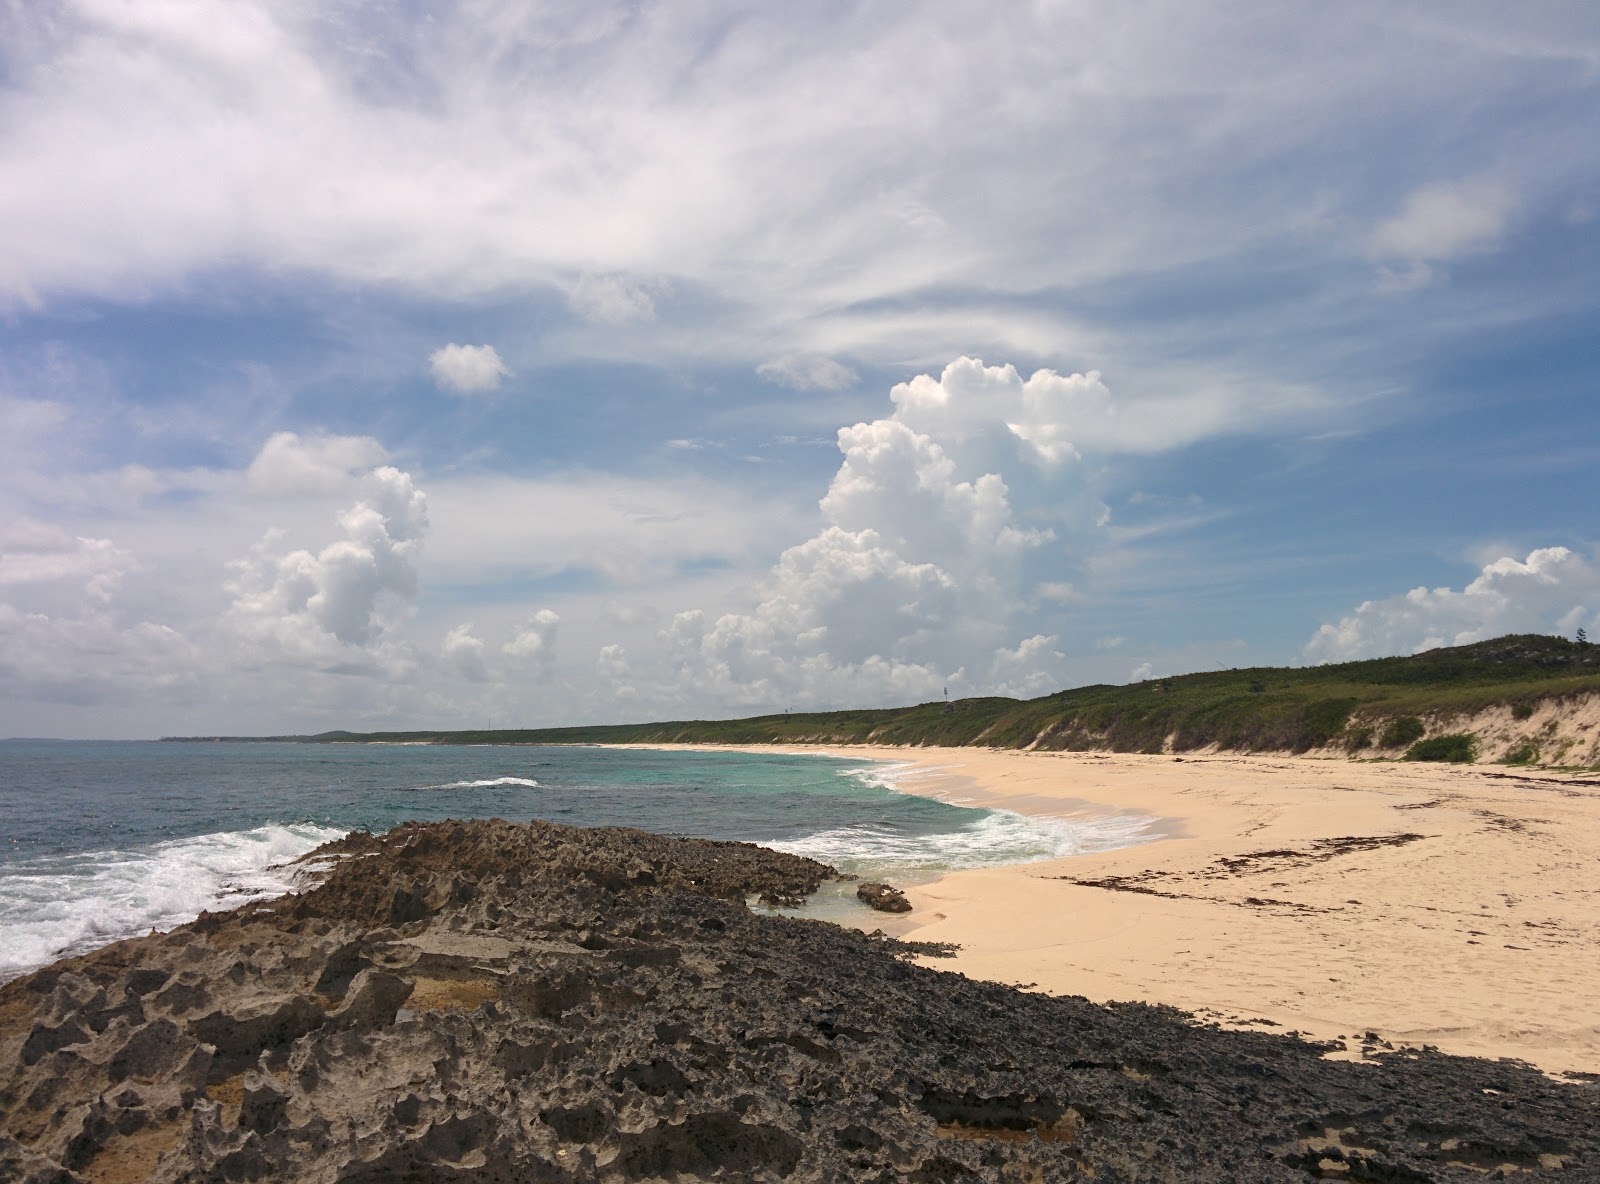 Surfer's beach'in fotoğrafı geniş plaj ile birlikte